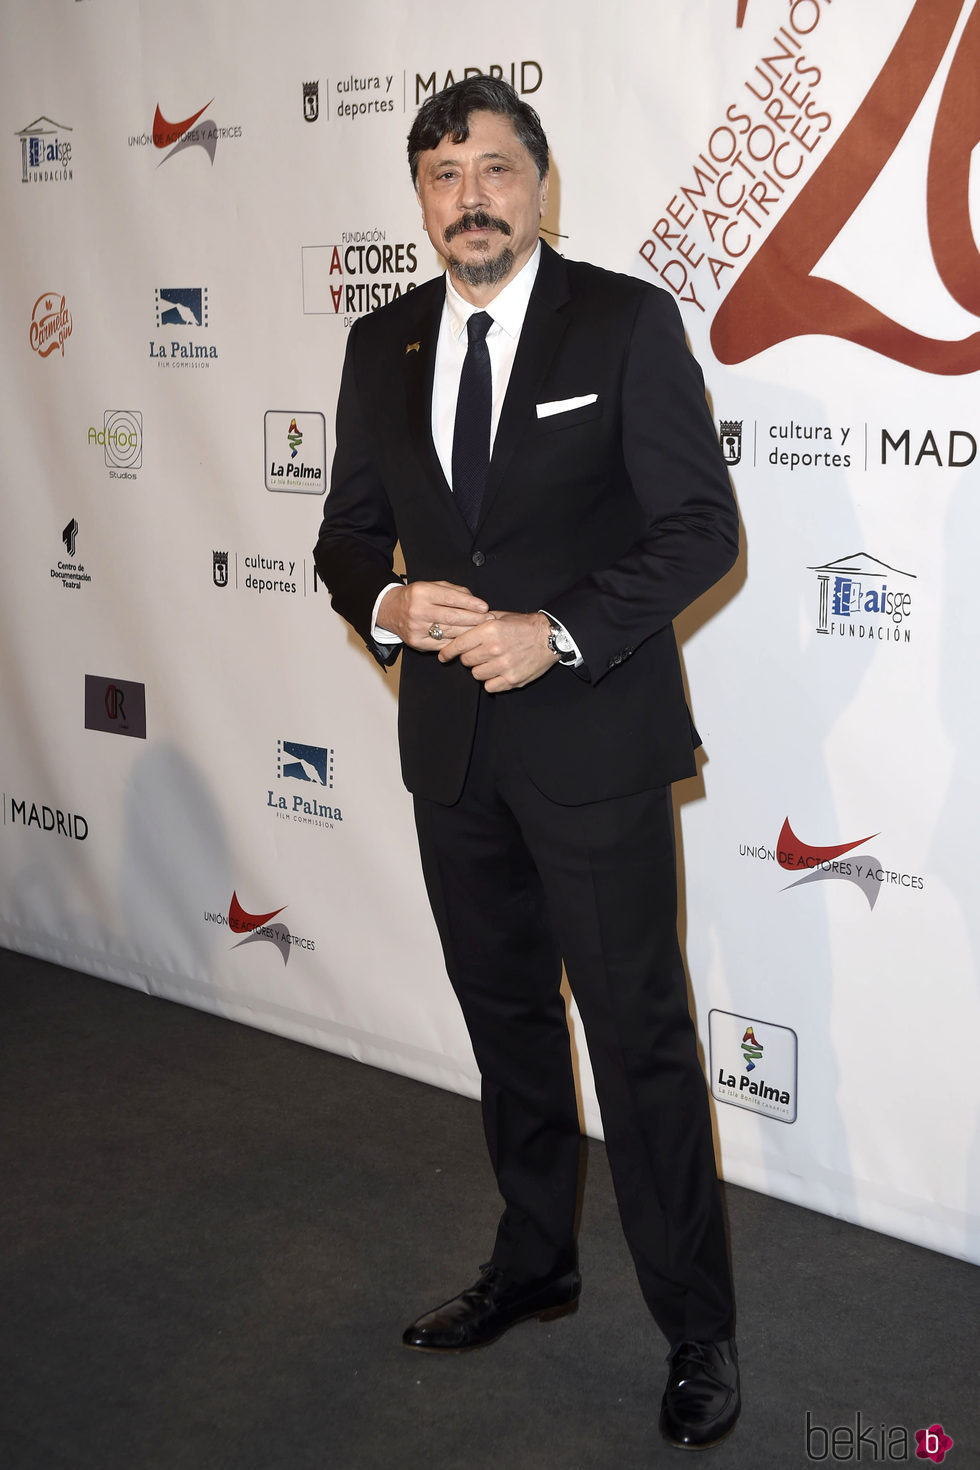 Carlos Bardem en la red carpet de la XXVI edición de los Premios de la Unión de Actores